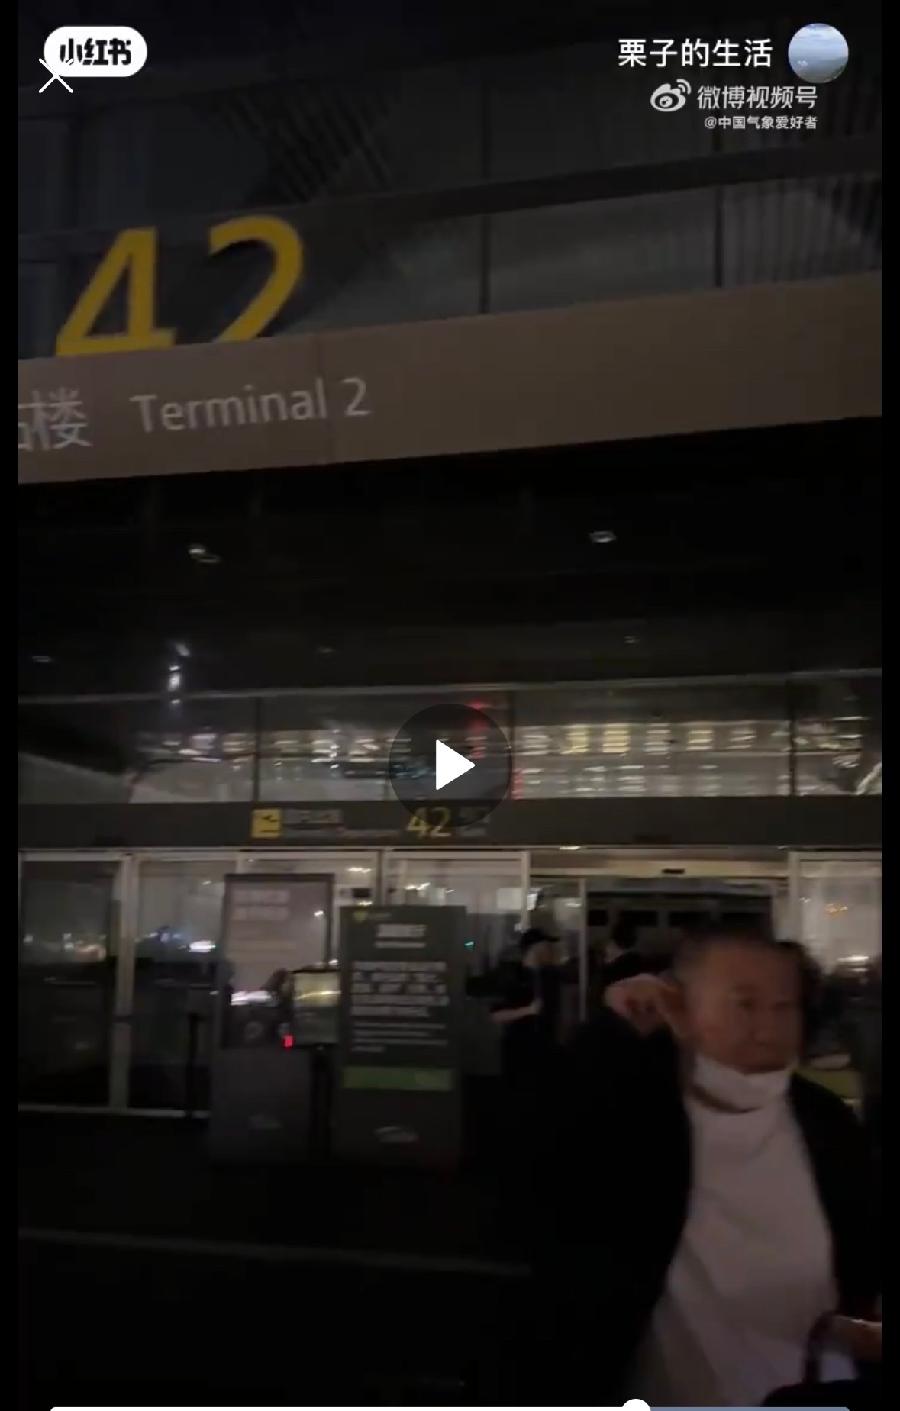 网友“栗子的生活”发布的二号航站楼停电视频截图